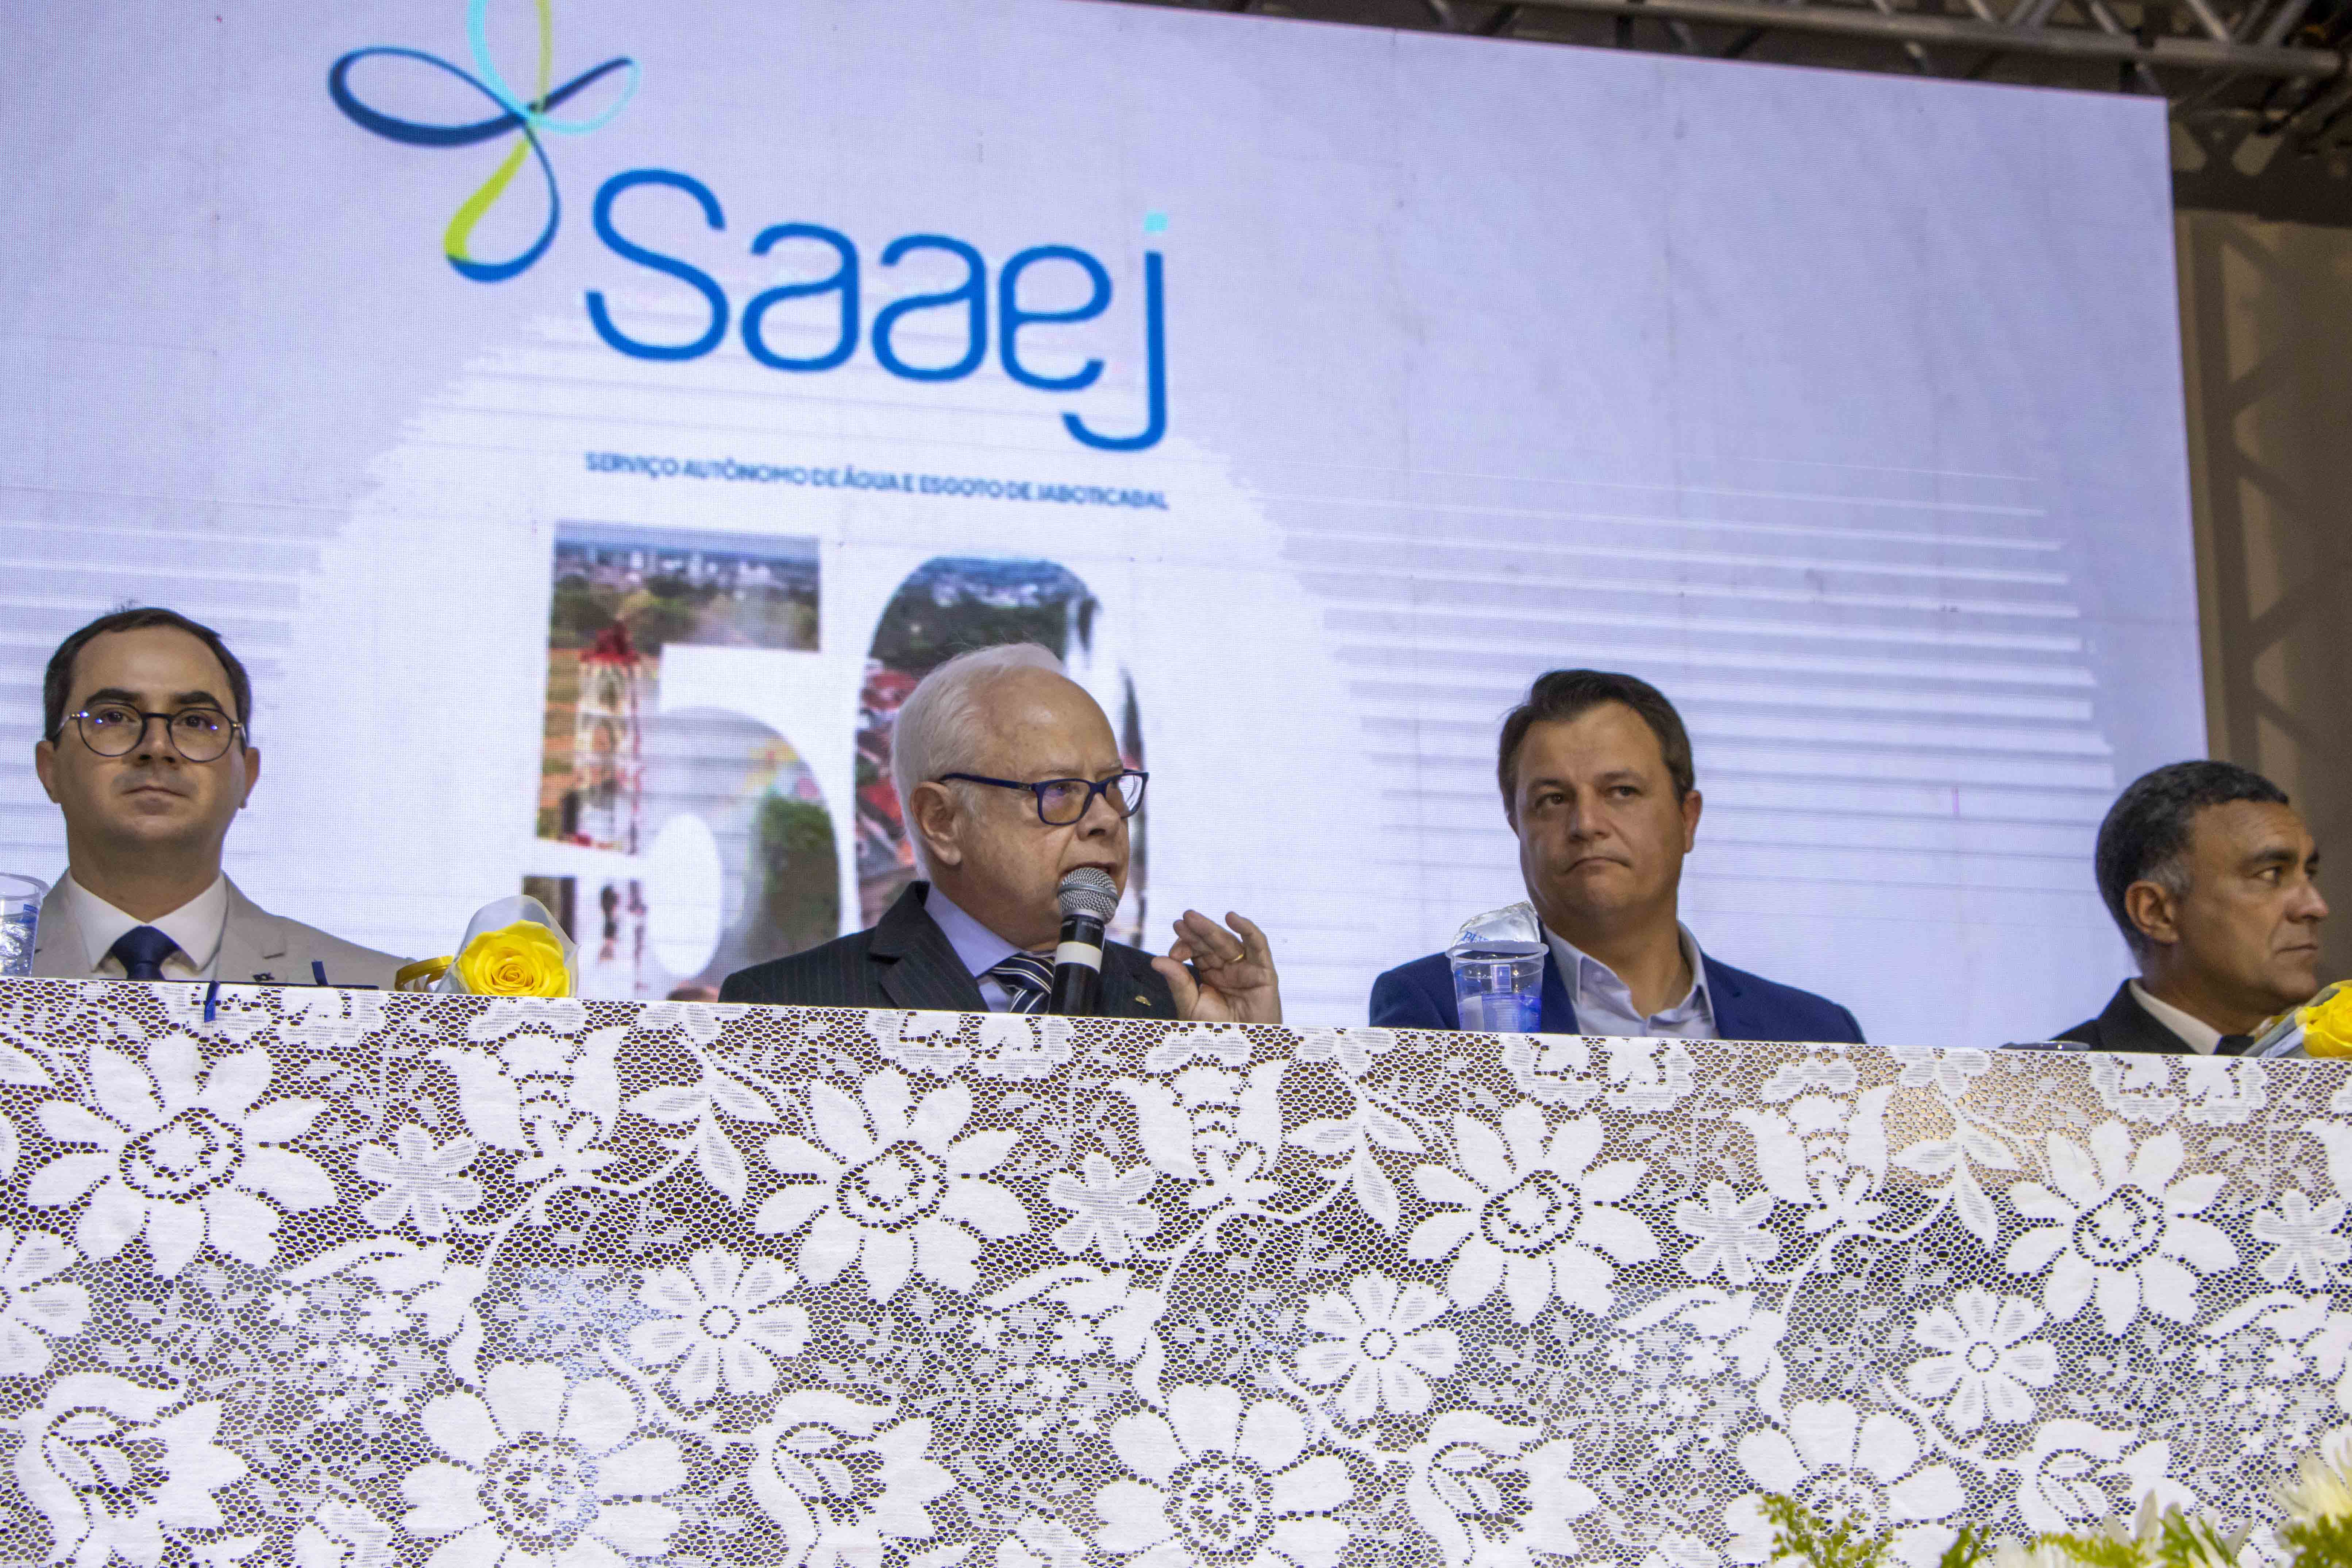 Presidente da Câmara, Dr. Edu Fenerich, conduz a sessão solene de homenagem pelos 50 anos do SAAEJ